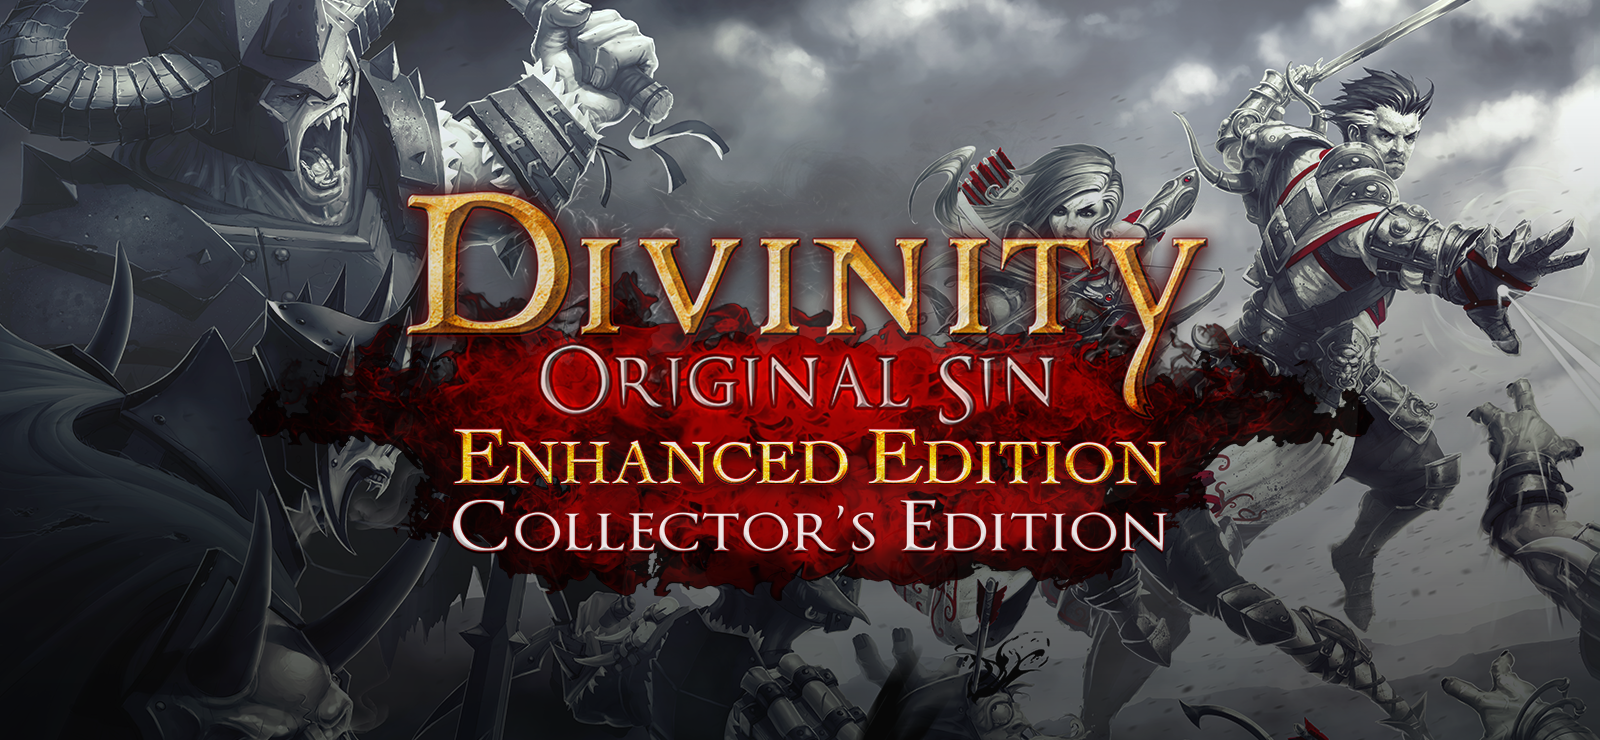 Divinity: Original Sin - Enhanced Edition Collector's Edition